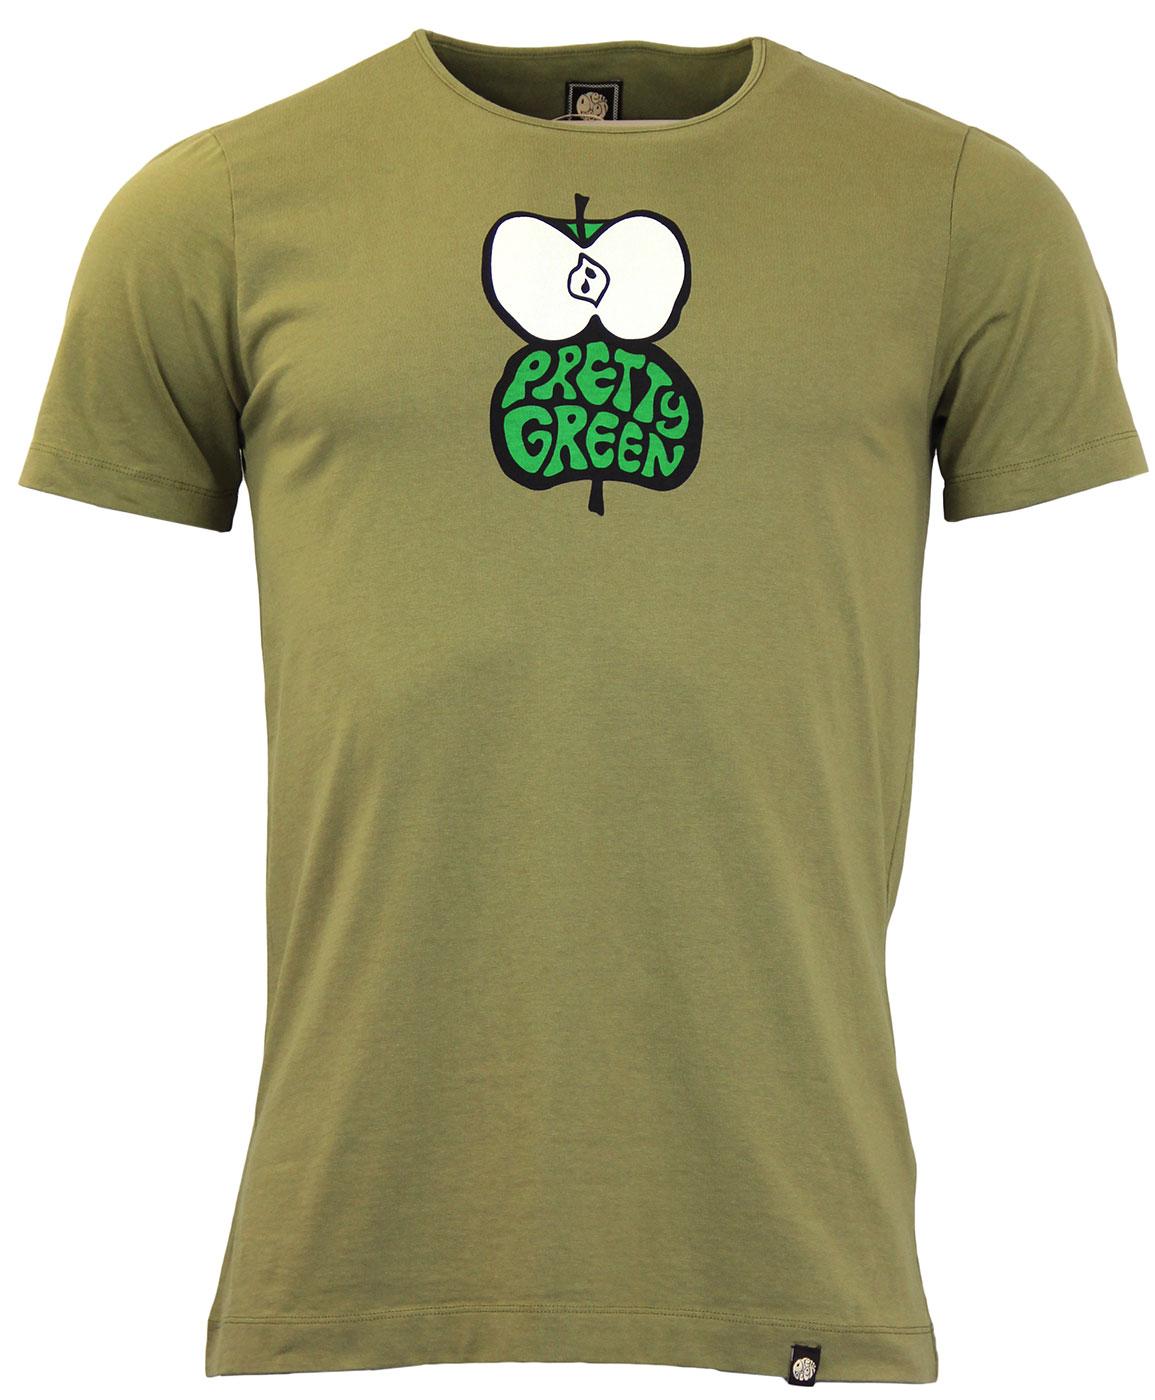 Shadow Apple PRETTY GREEN Retro 60s Print T-Shirt